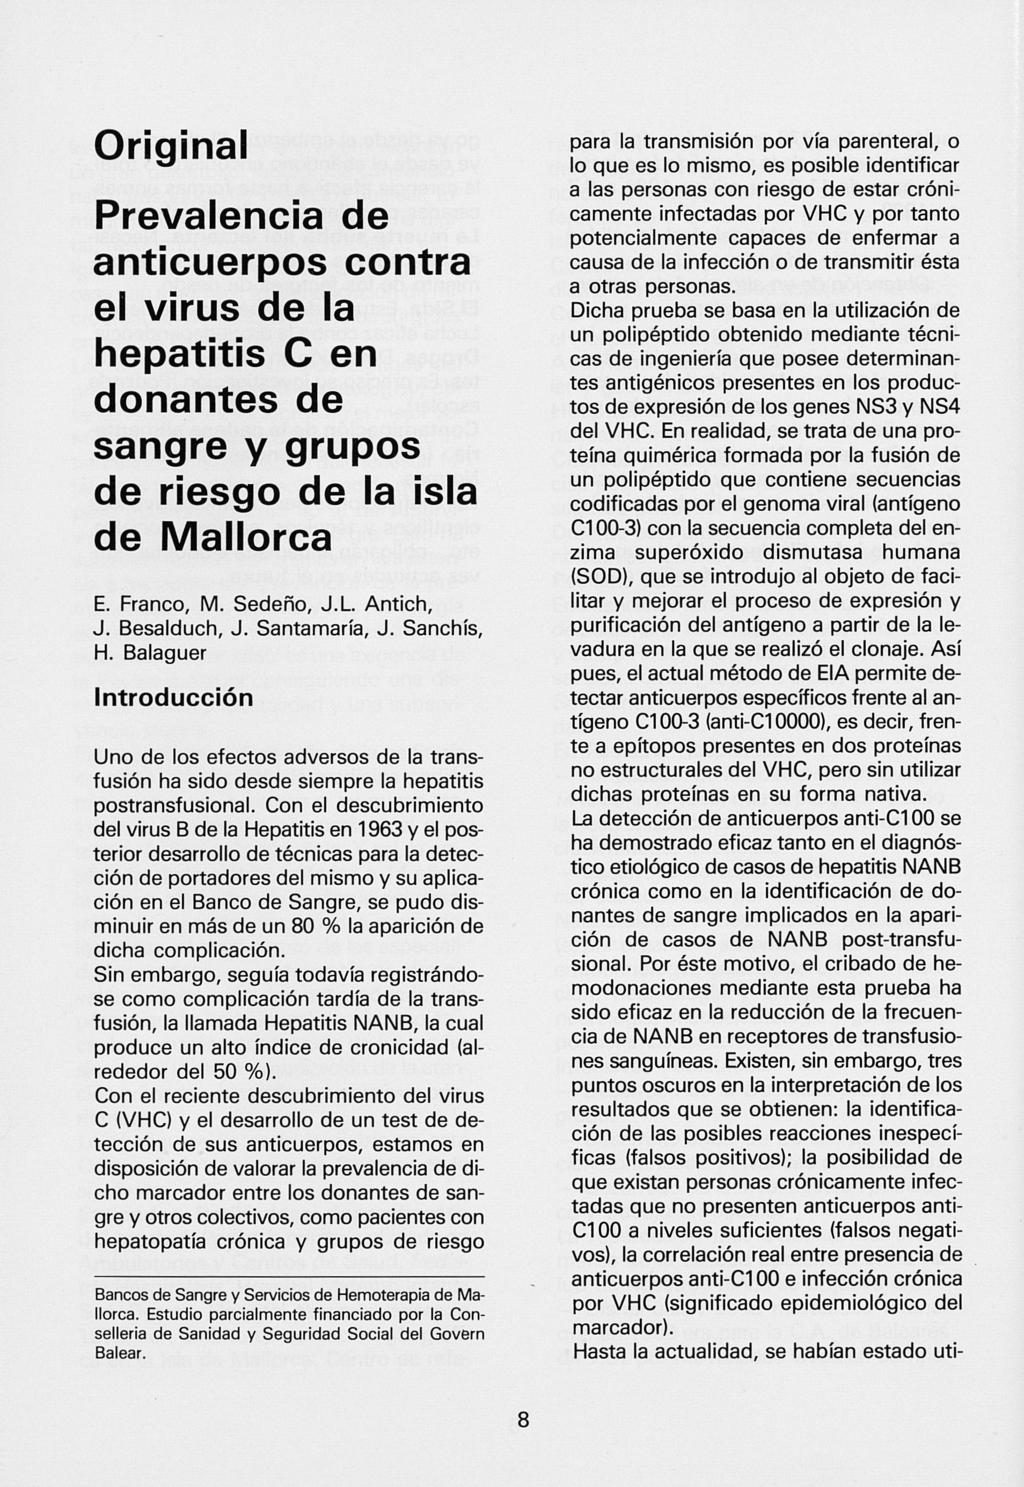 Original Prevalencia de anticuerpos contra el virus de la hepatitis C en donantes de sangre y grupos de riesgo de la isla de Mallorca E. Franco, M. Sedeño, J.L Antich, J. Besalduch, J. Santamaría, J.